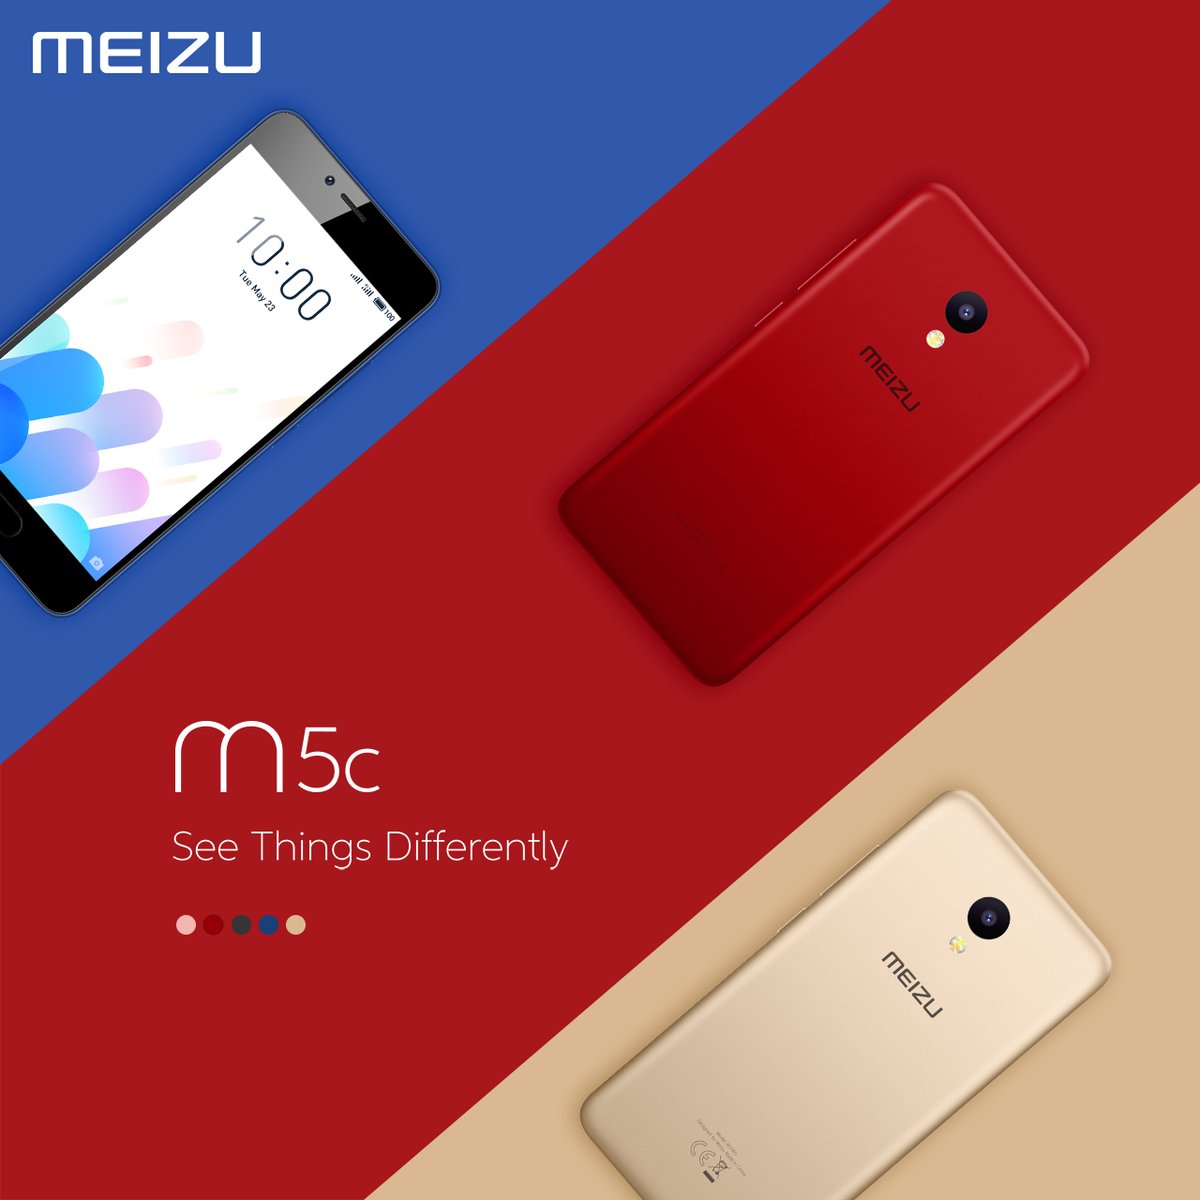 Meizu M5c price